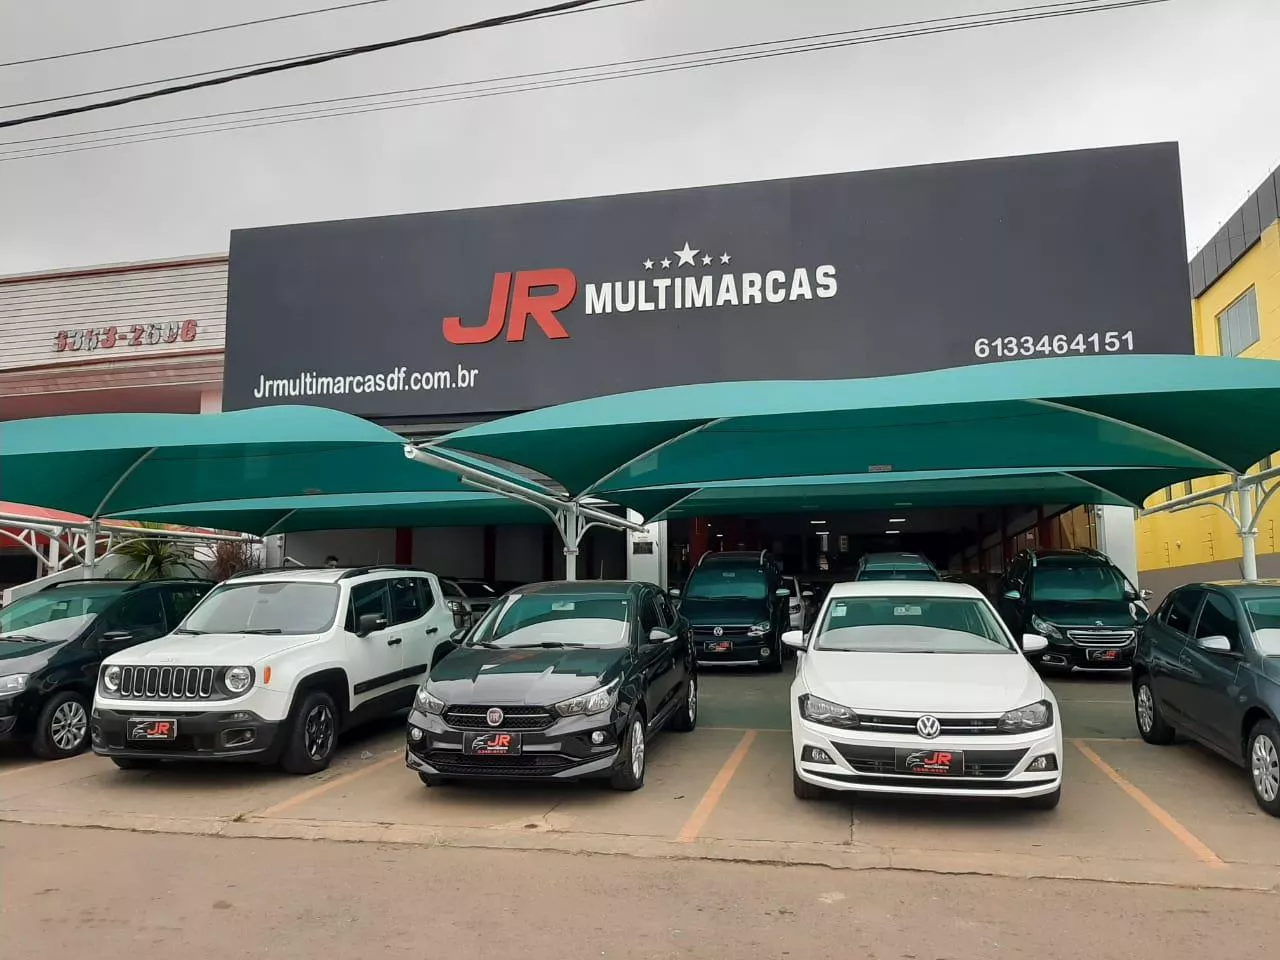 EXTRA MULTIMARCAS - Brasília - DF